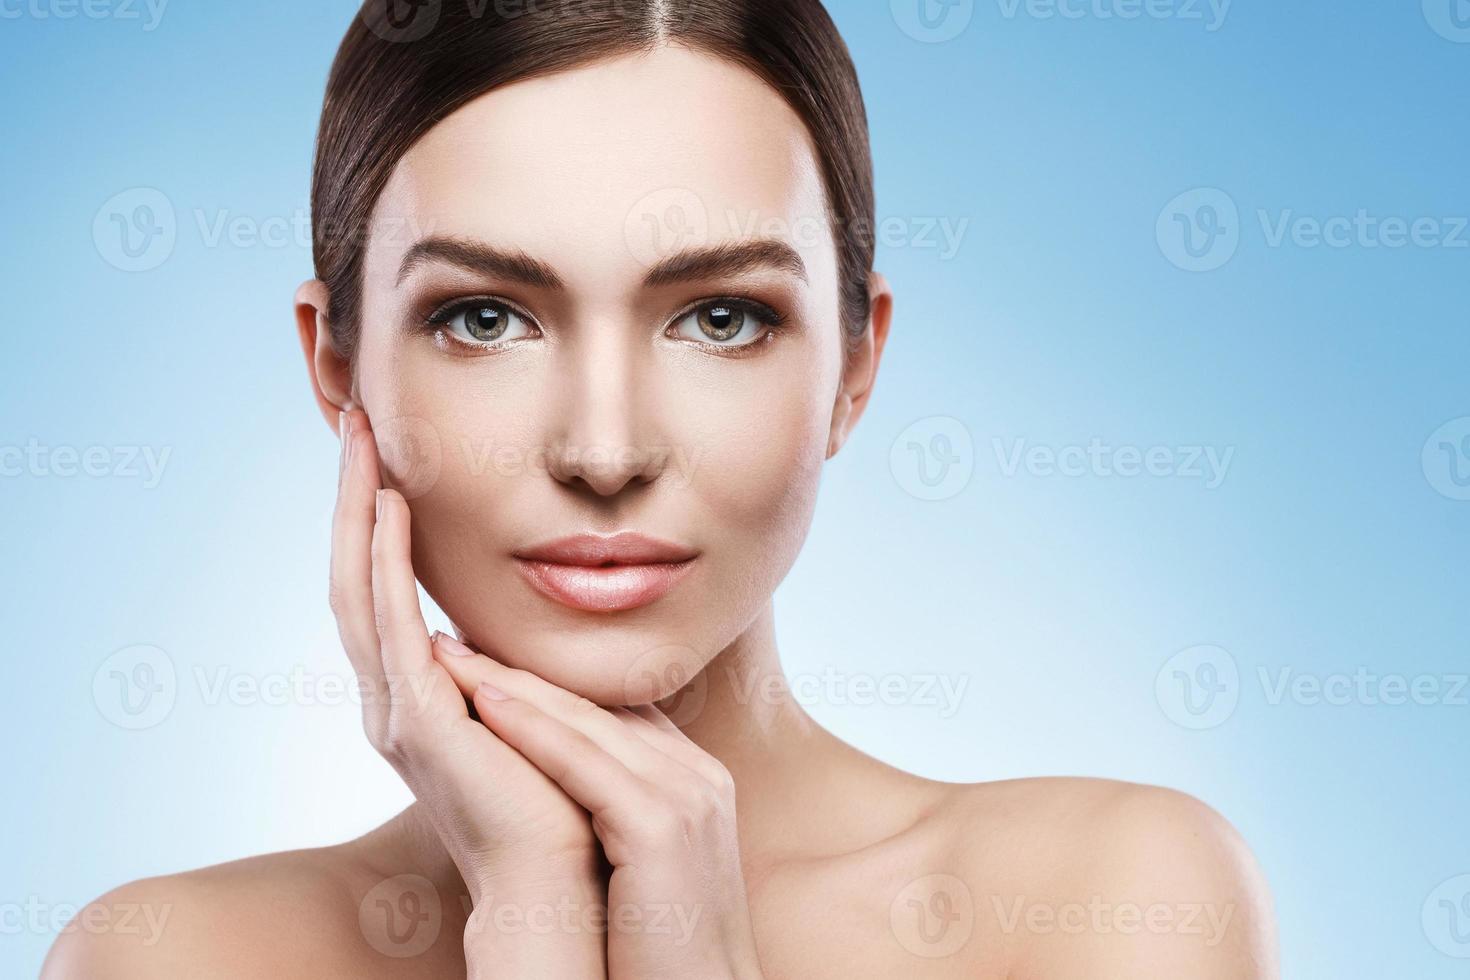 jovem mulher com maquiagem natural e pele lisa contra fundo azul claro foto